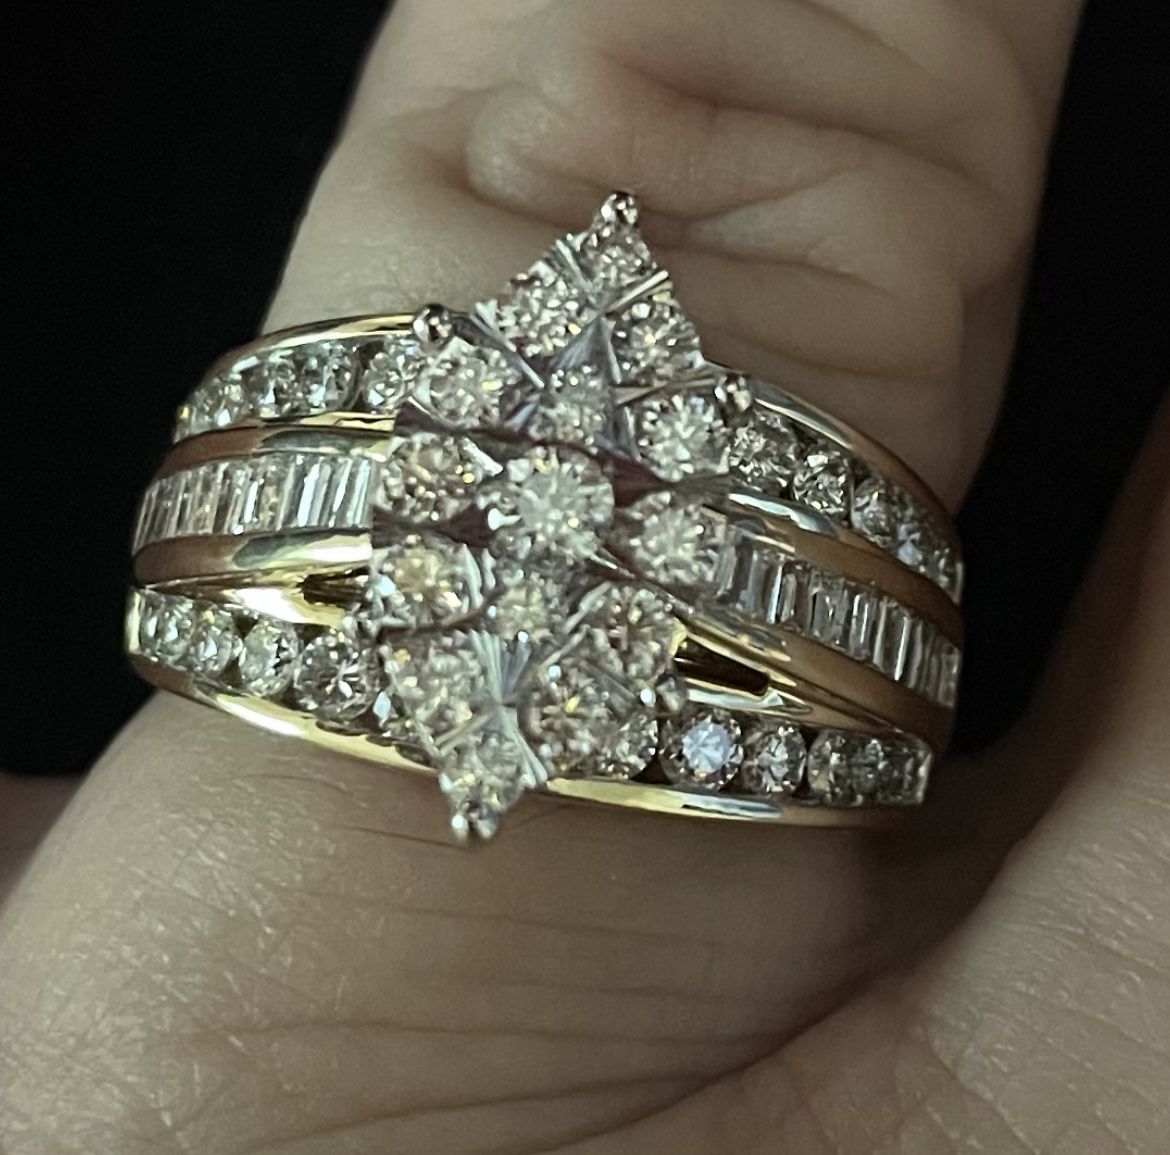 Engagement Ring DiamondsYellow & White Gold. 14 Kt. 1.46 Ct Weight 63 Diamond Stones $1,200.00